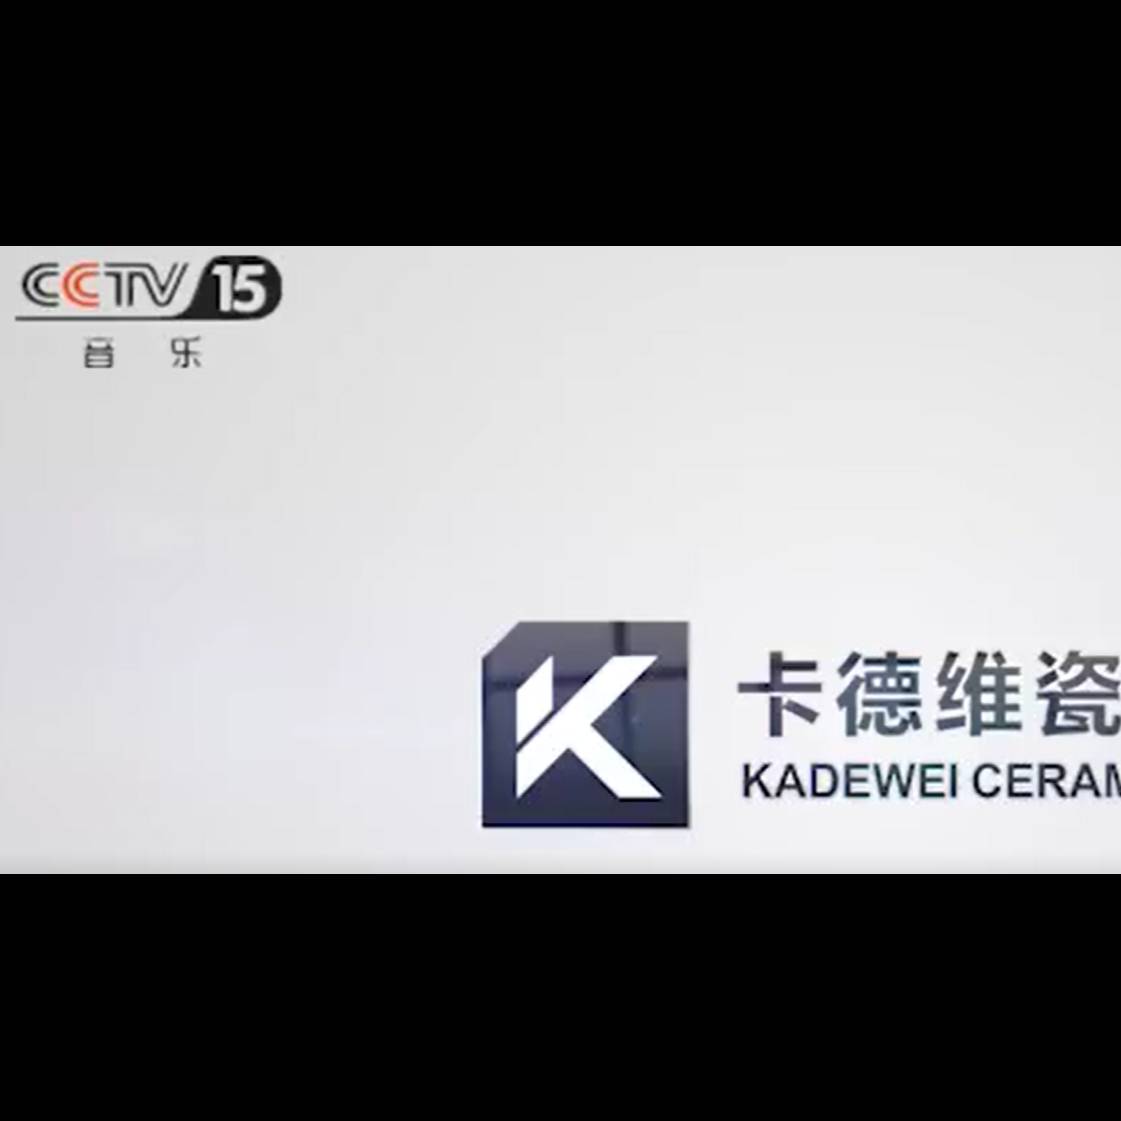 cctv广告 卡德维瓷砖